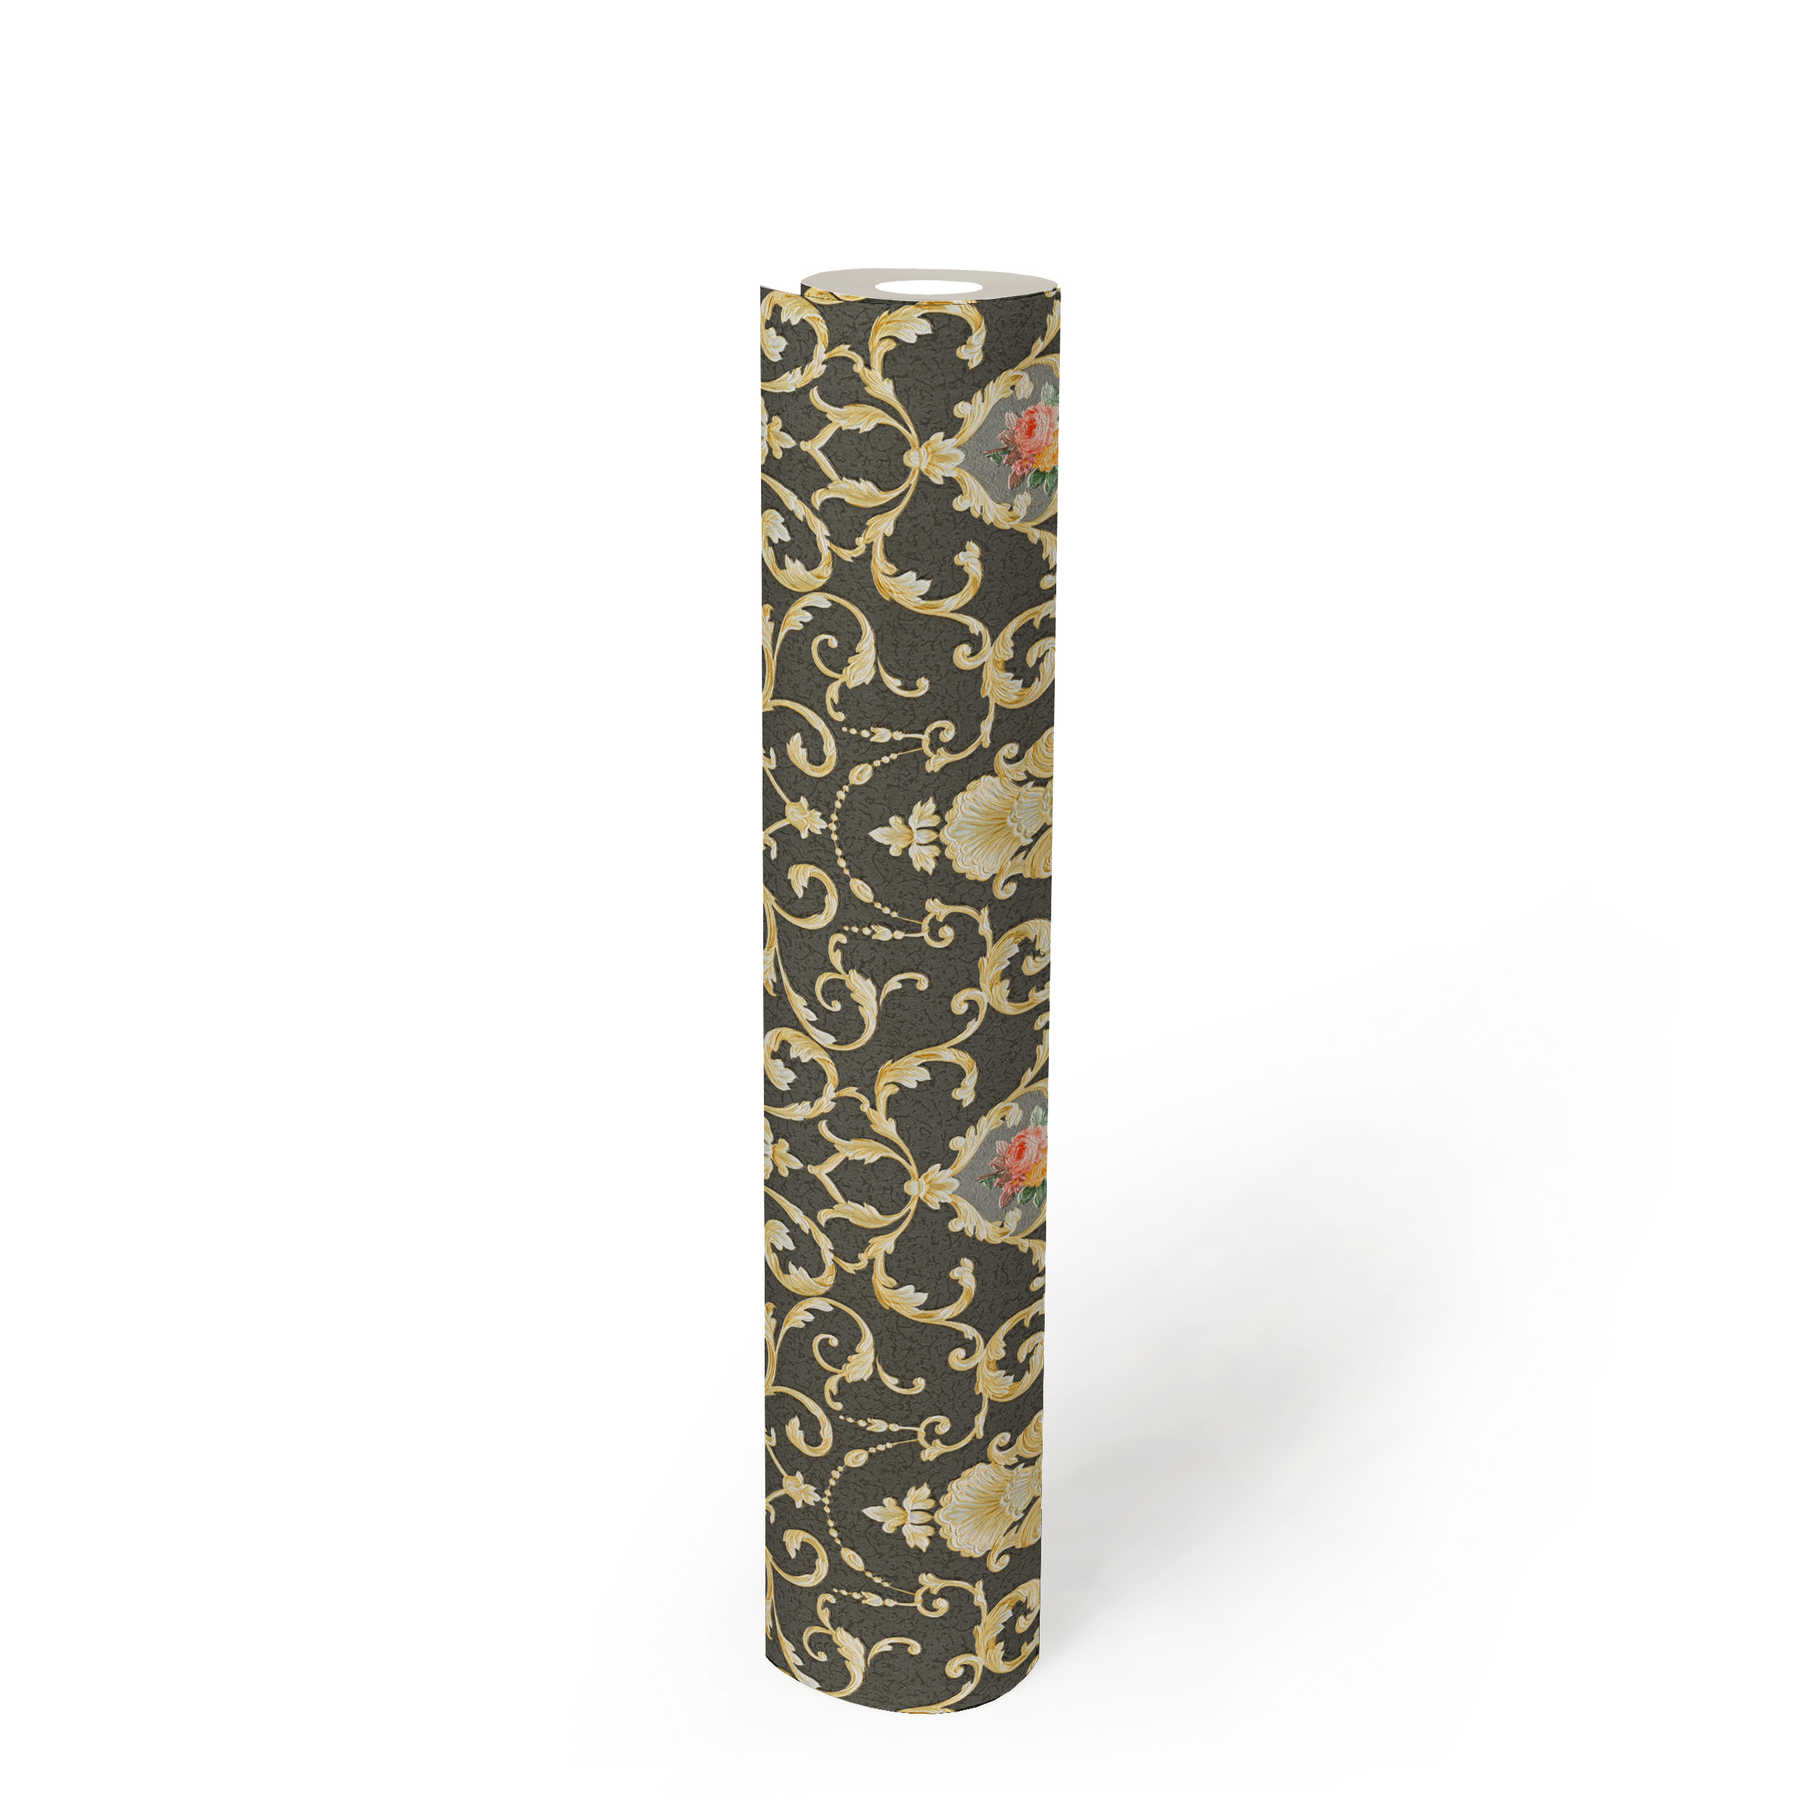             Luxus Tapete mit Ornamentmuster & Blumen-Bouquet – Metallic, Schwarz
        